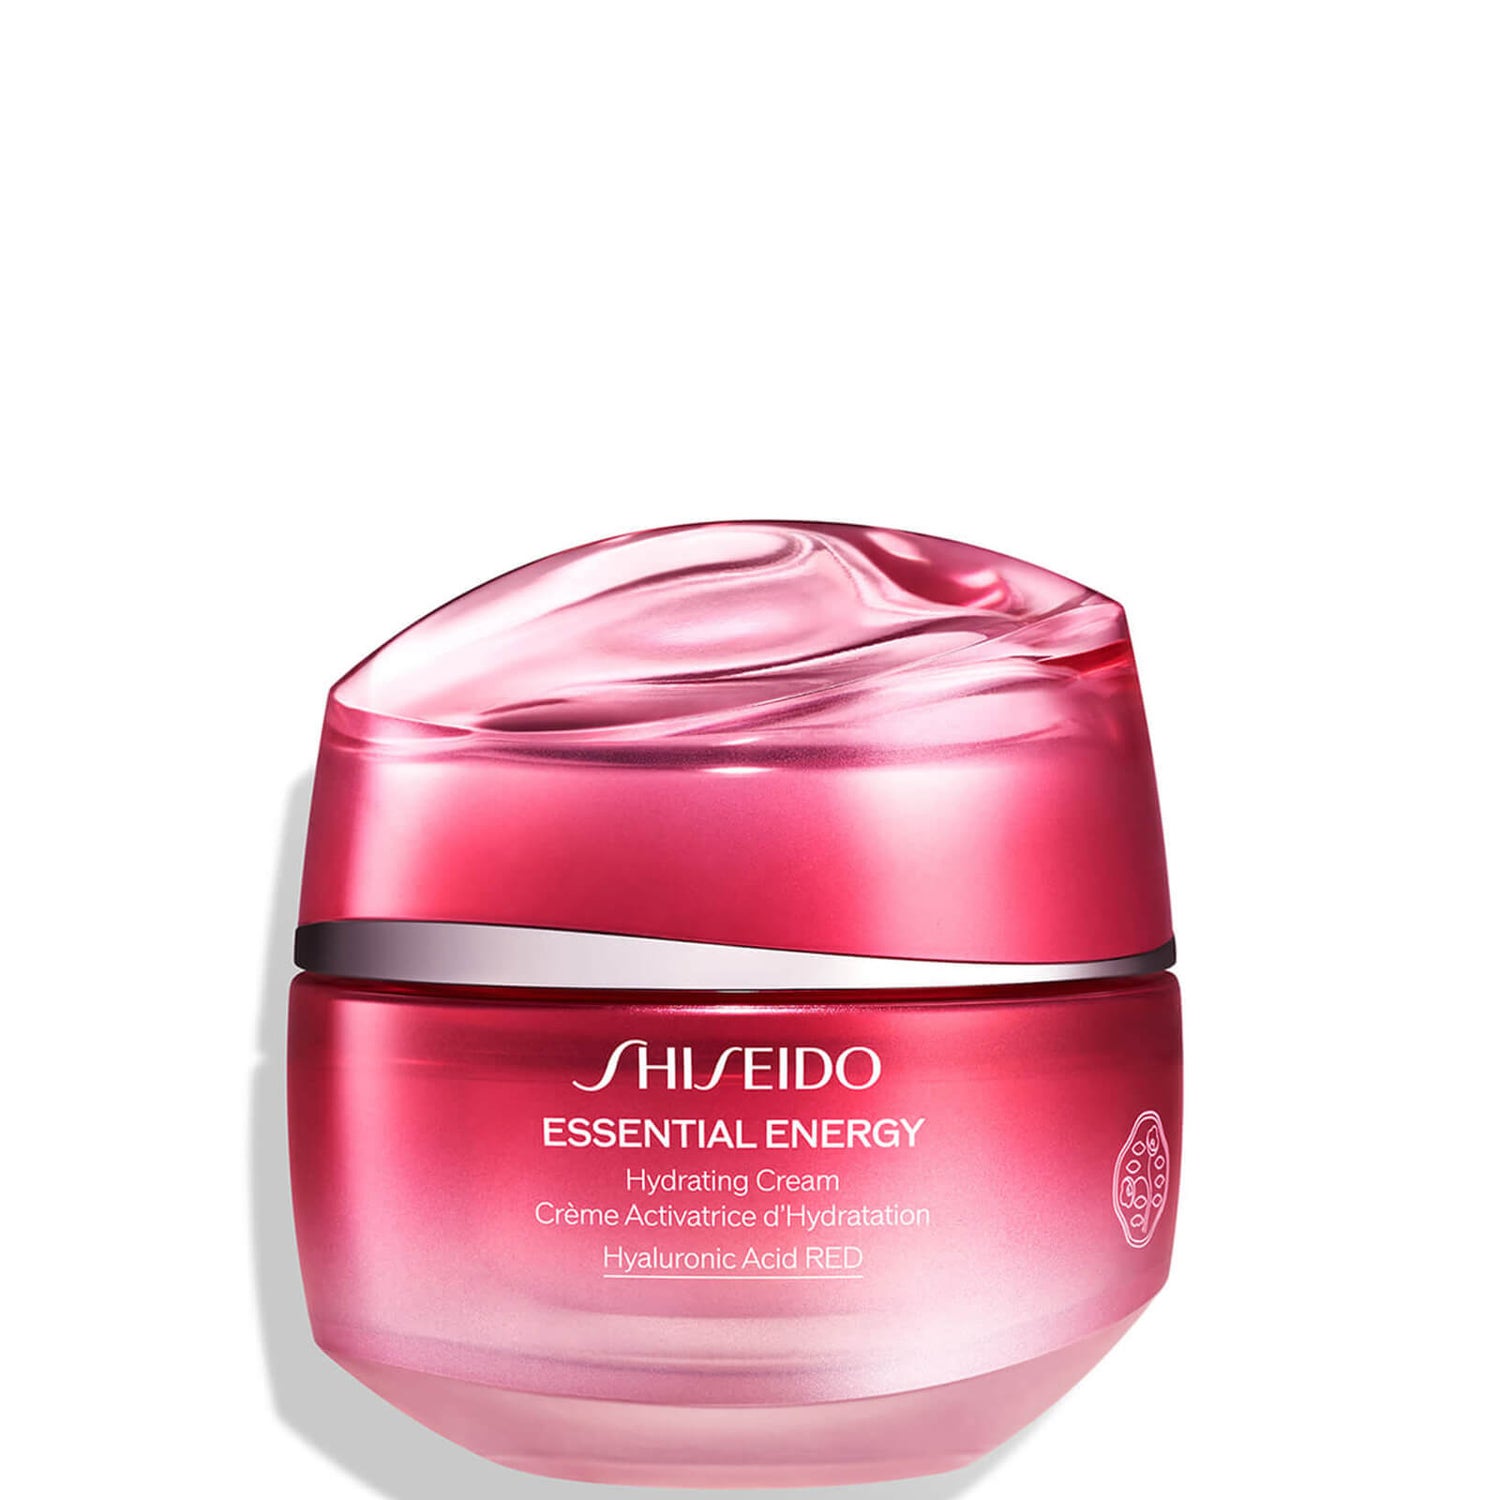 Увлажняющий дневной крем spf. Шисейдо Essential Energy Hydrating Cream. Крем Shiseido Essential Energy. Shiseido Essential Energy Hydrating Cream 50g\. Сыворотка Shiseido Essential Energy.